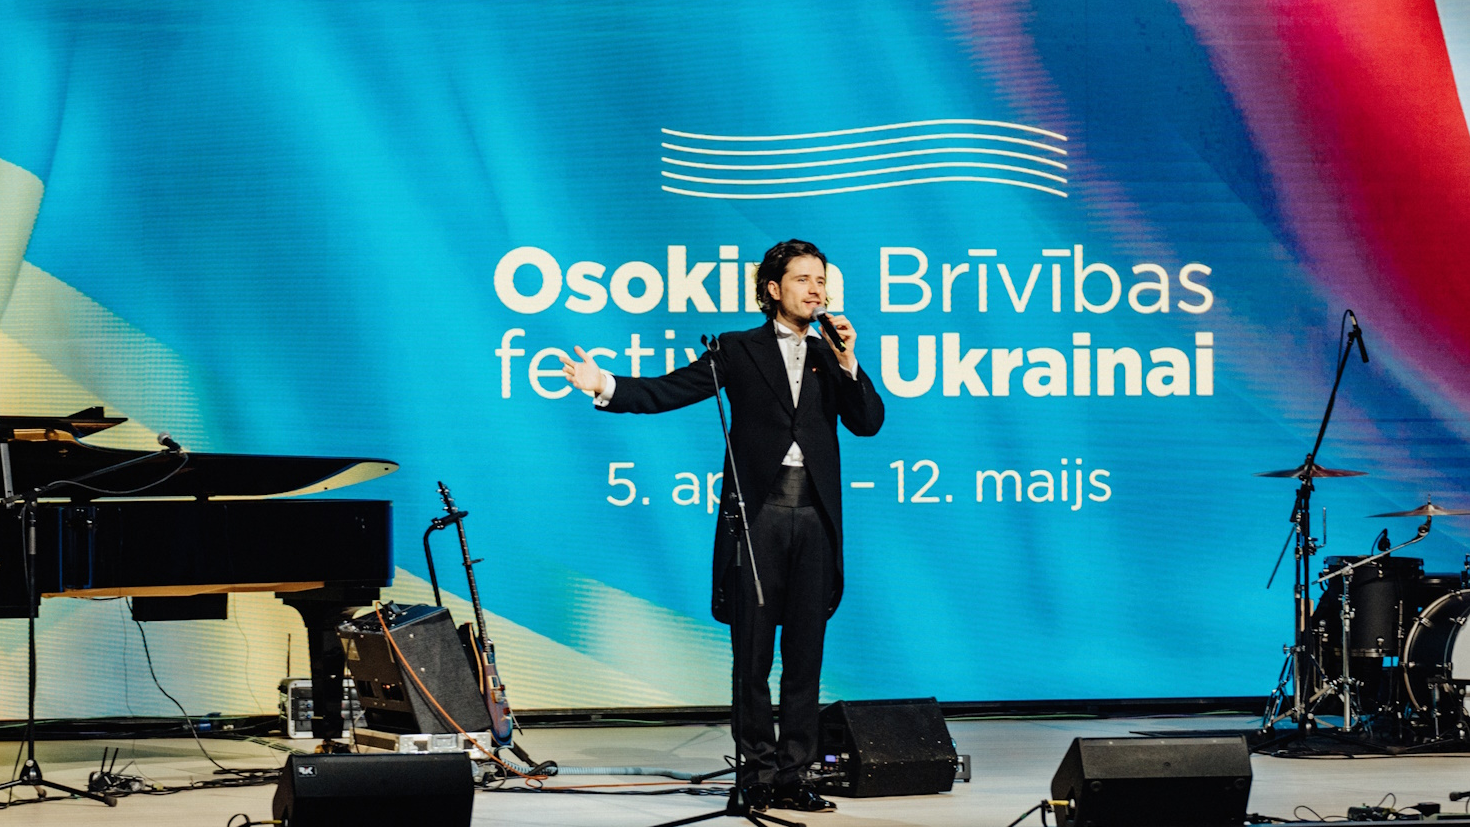 Norisnājies jau piektais pianista Andrejs Osokins Brīvības festivāls Ukrainai 